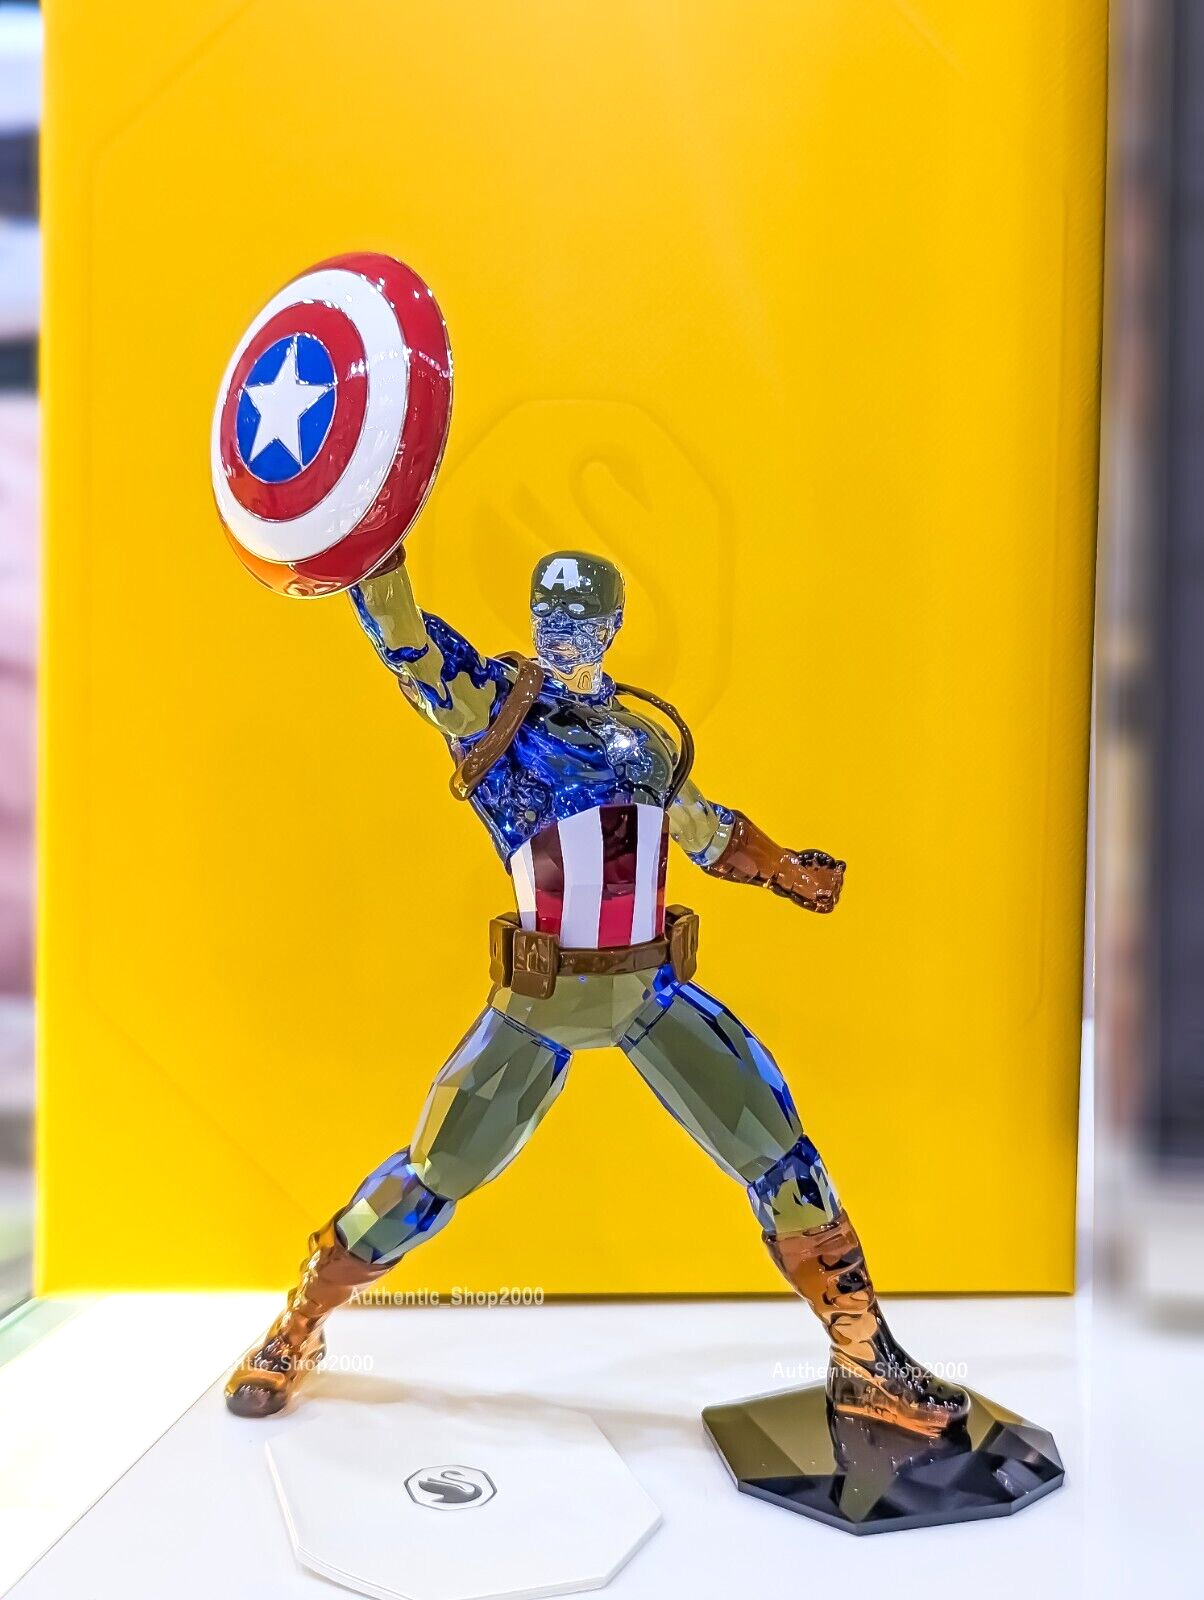 New 100% SWAROVSKI Brand Marvel Captain America Crystal Figurine in Box 5676135